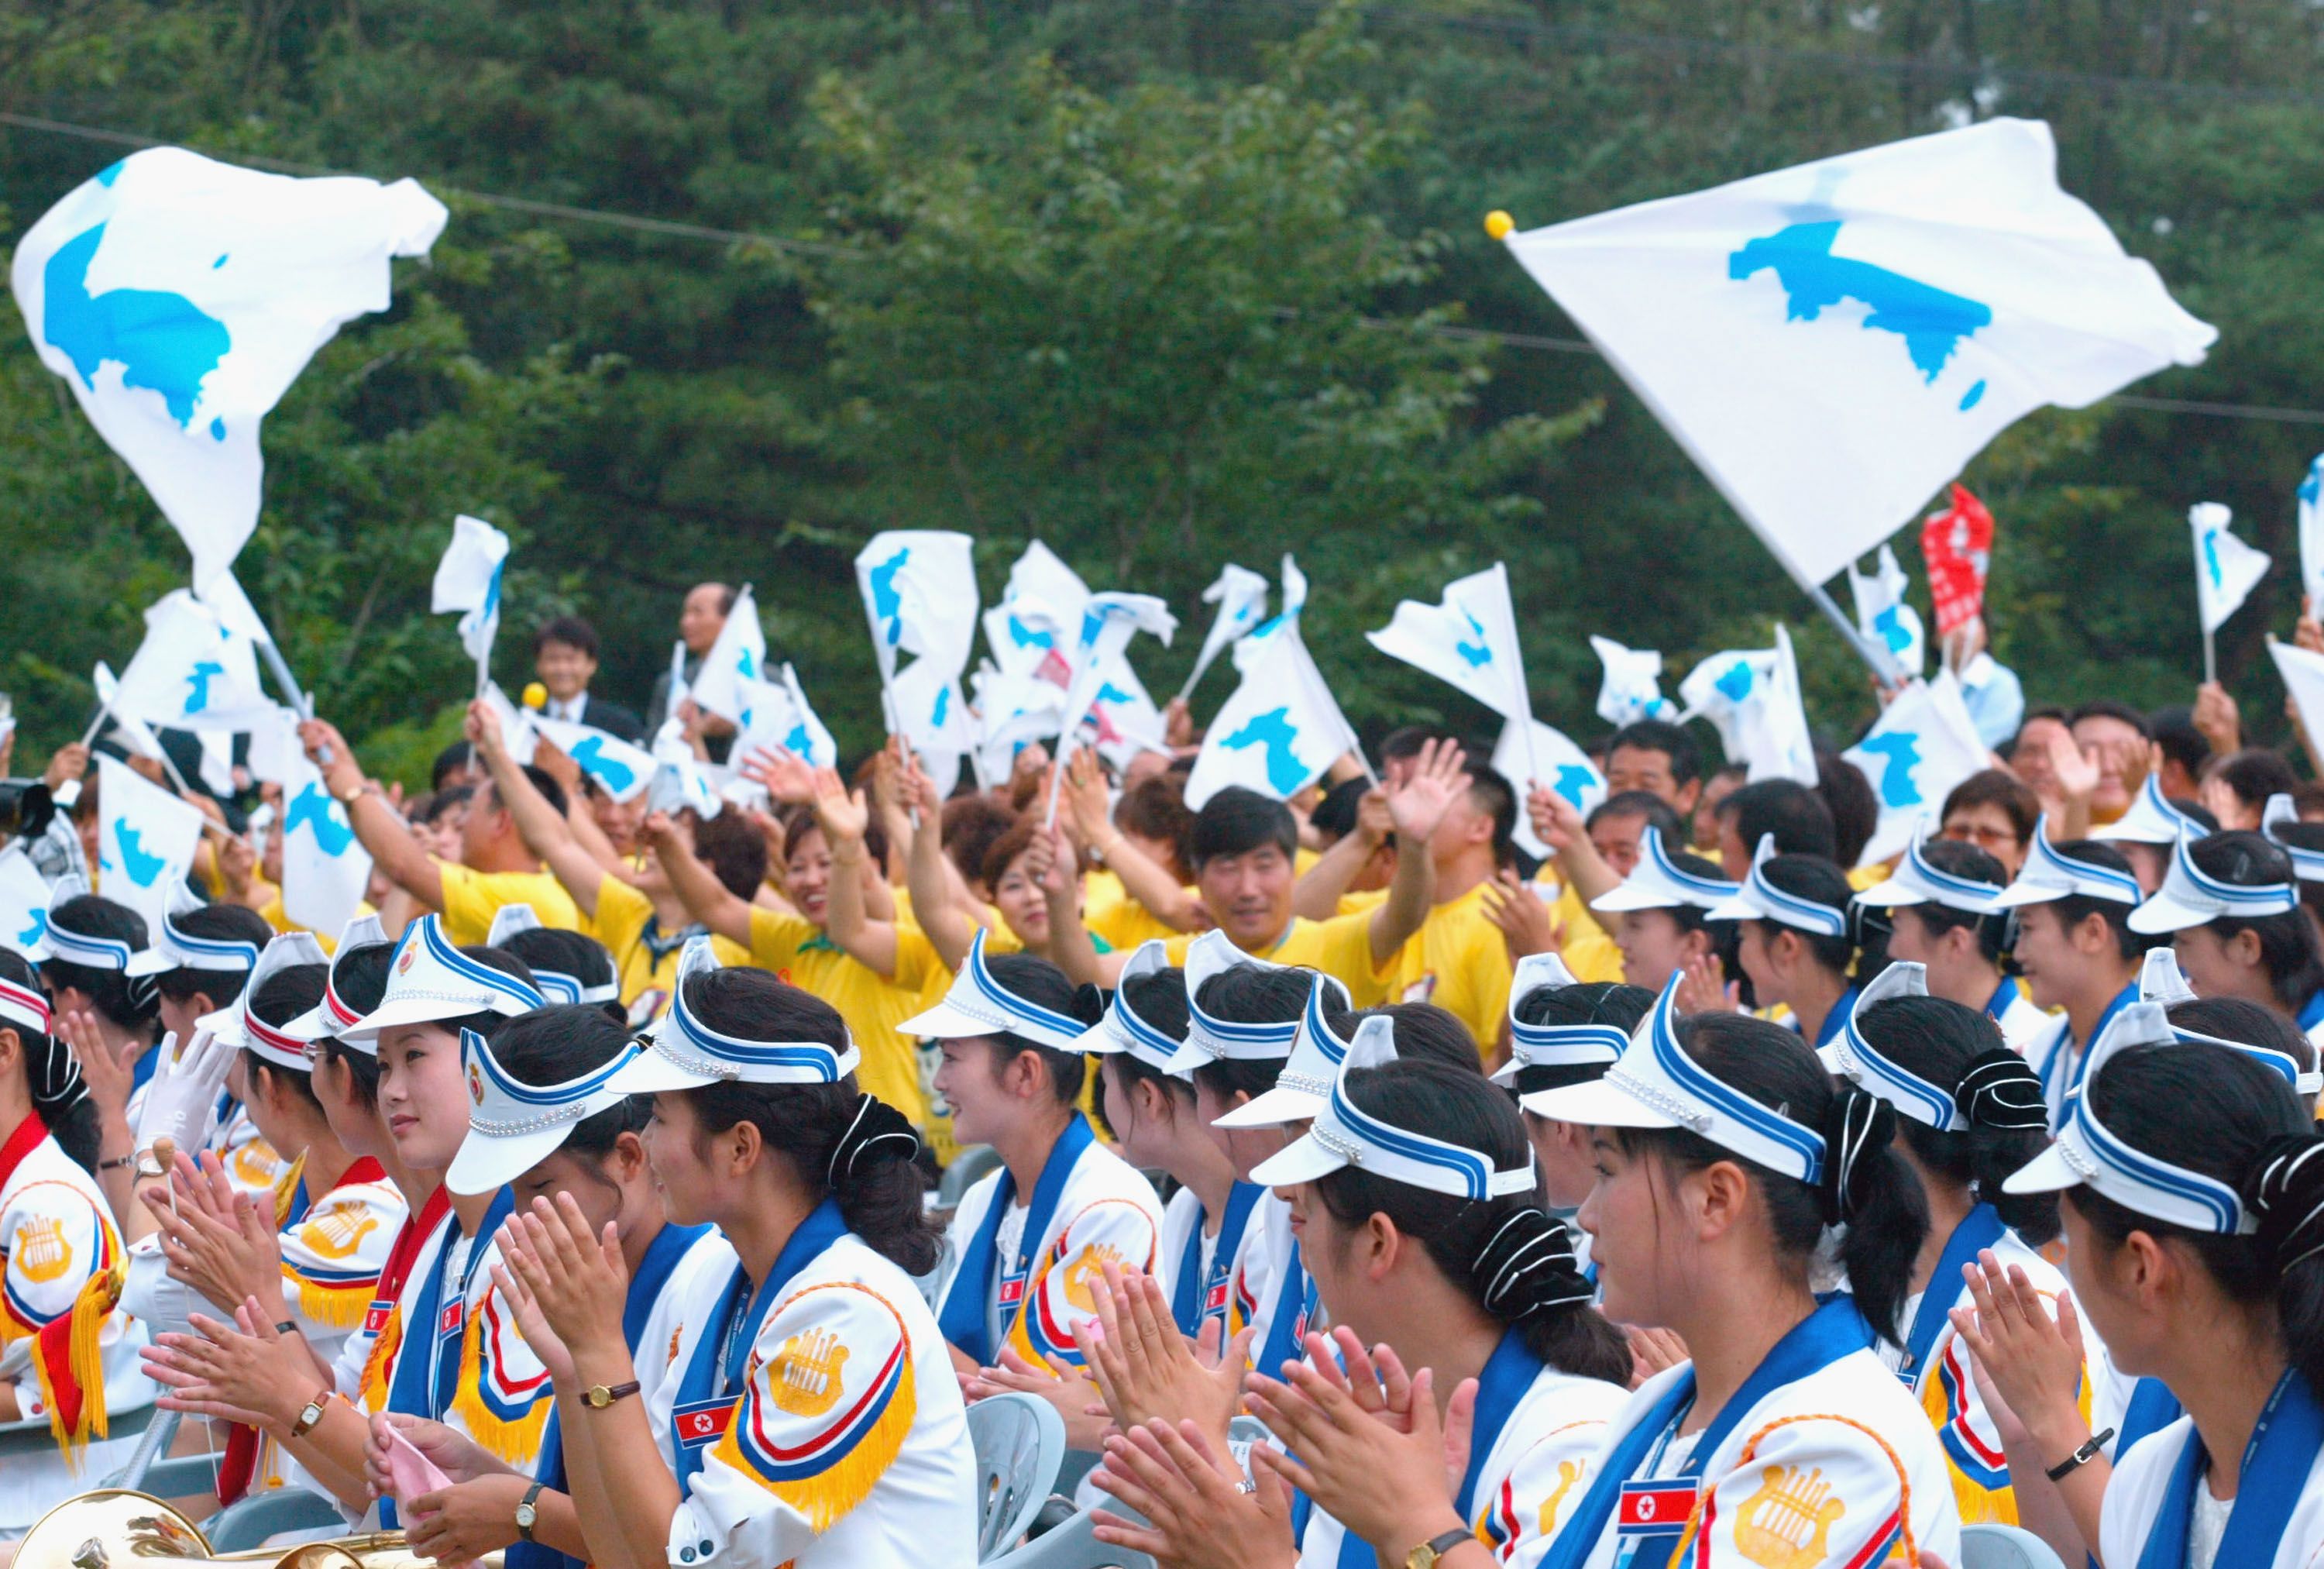 Korean Dream Festa for Korea United